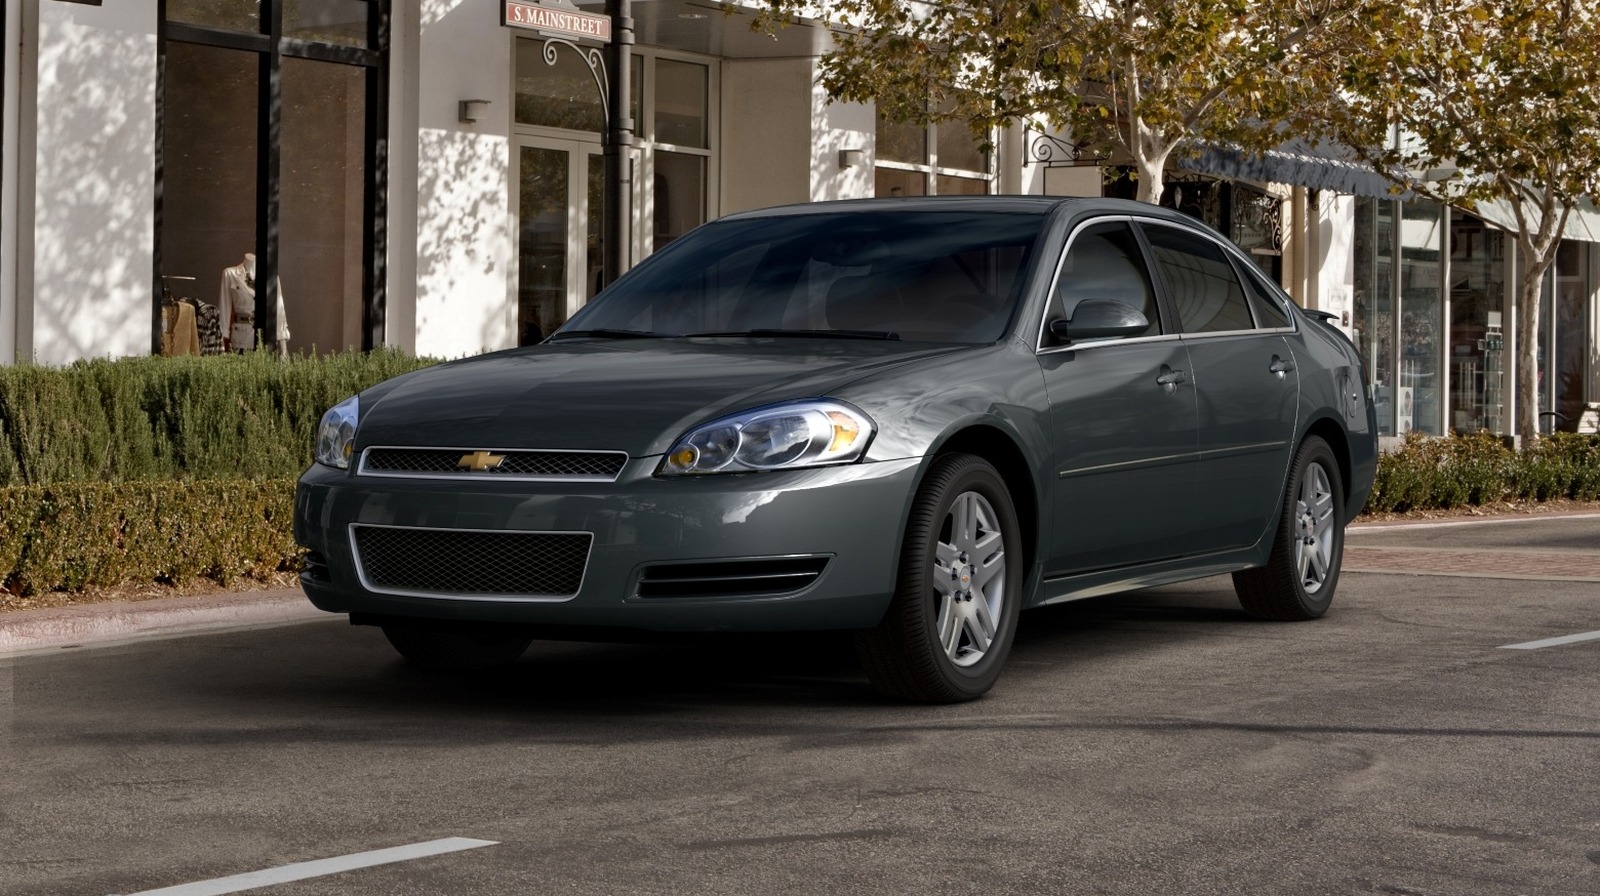 ¿Es el Chevrolet Impala 2013 un coche fiable? Esto es lo que debes saber